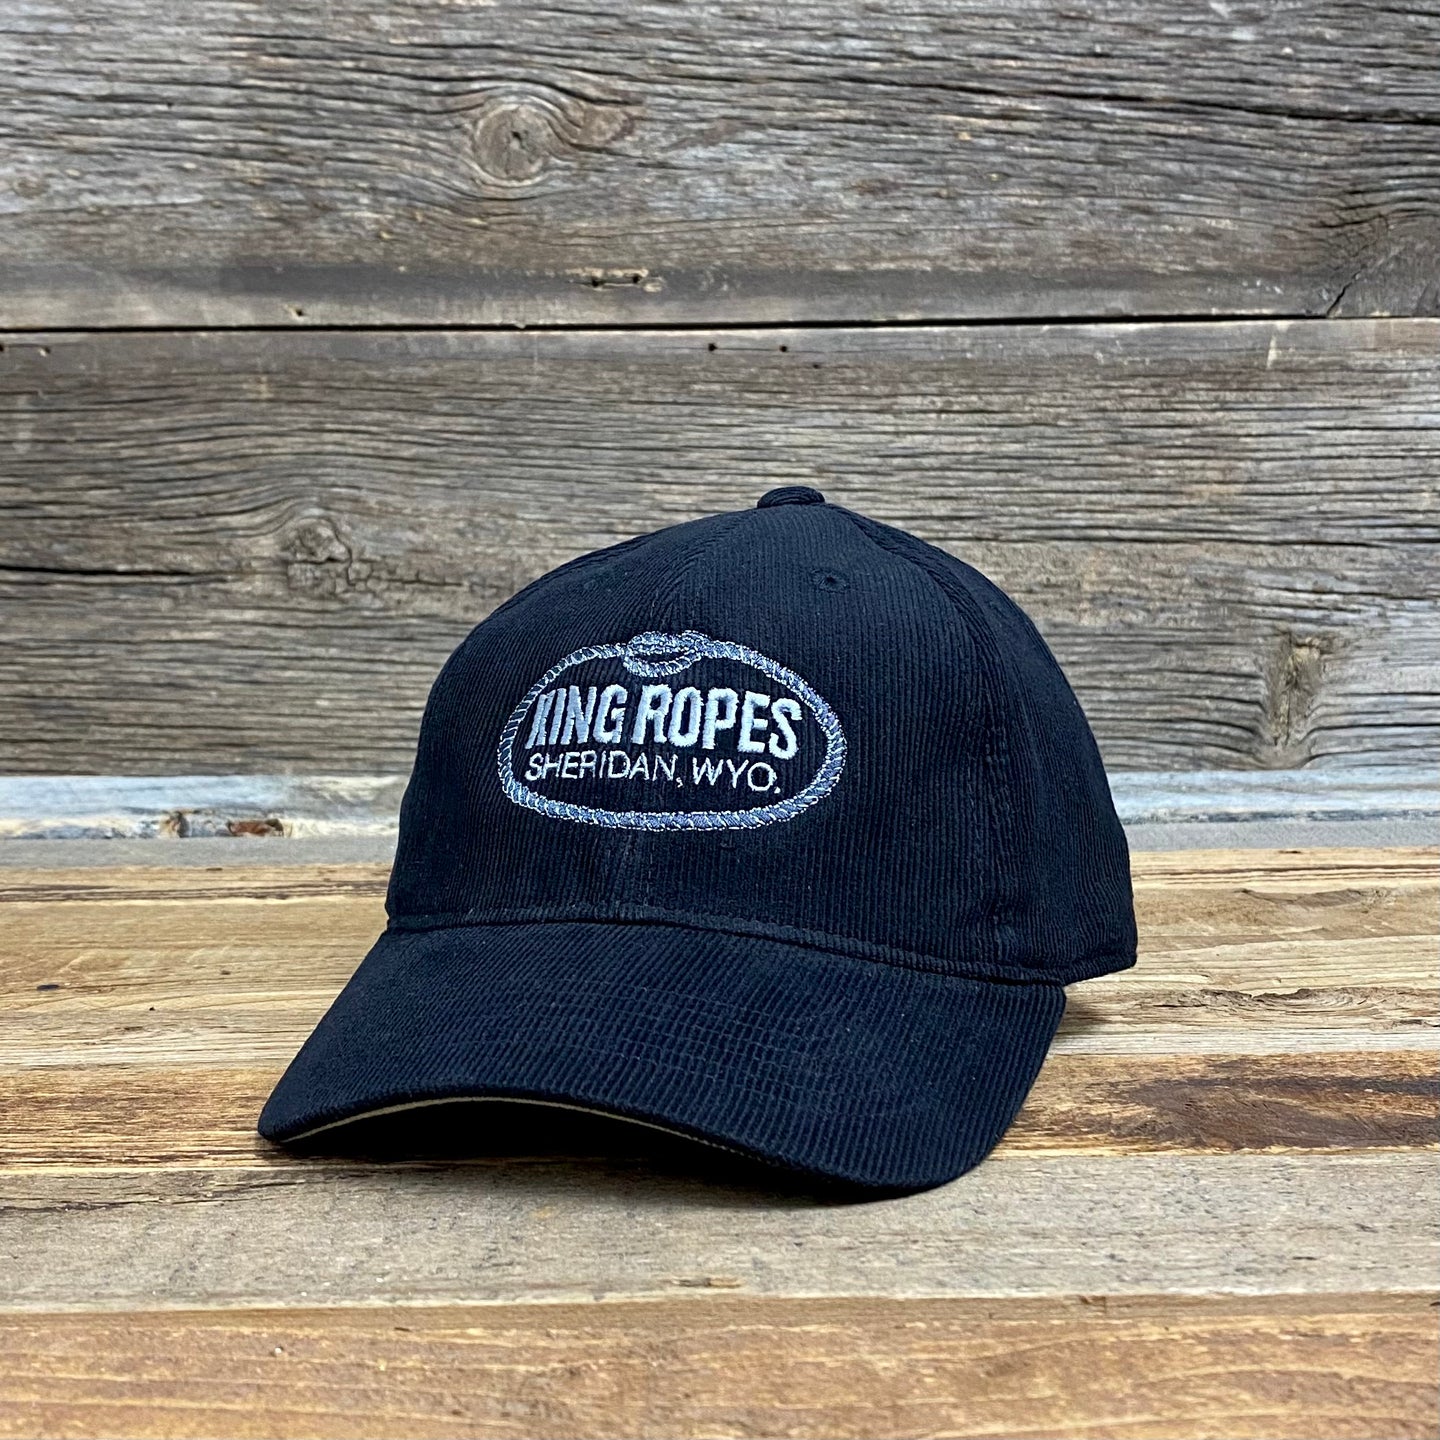 King Ropes Original Corduroy Dad Hat